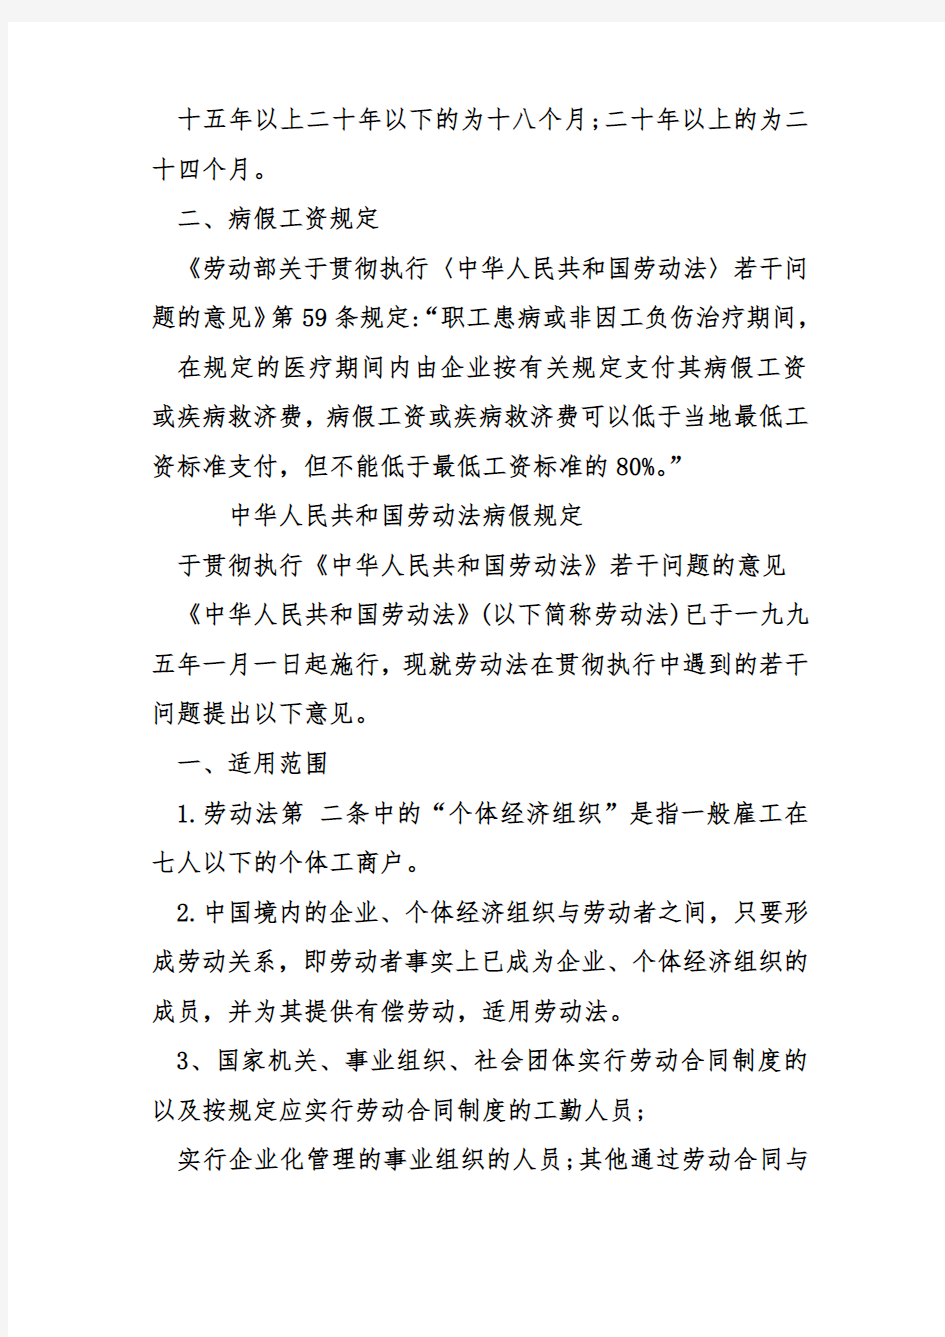 中华人民共和国劳动法病假规定